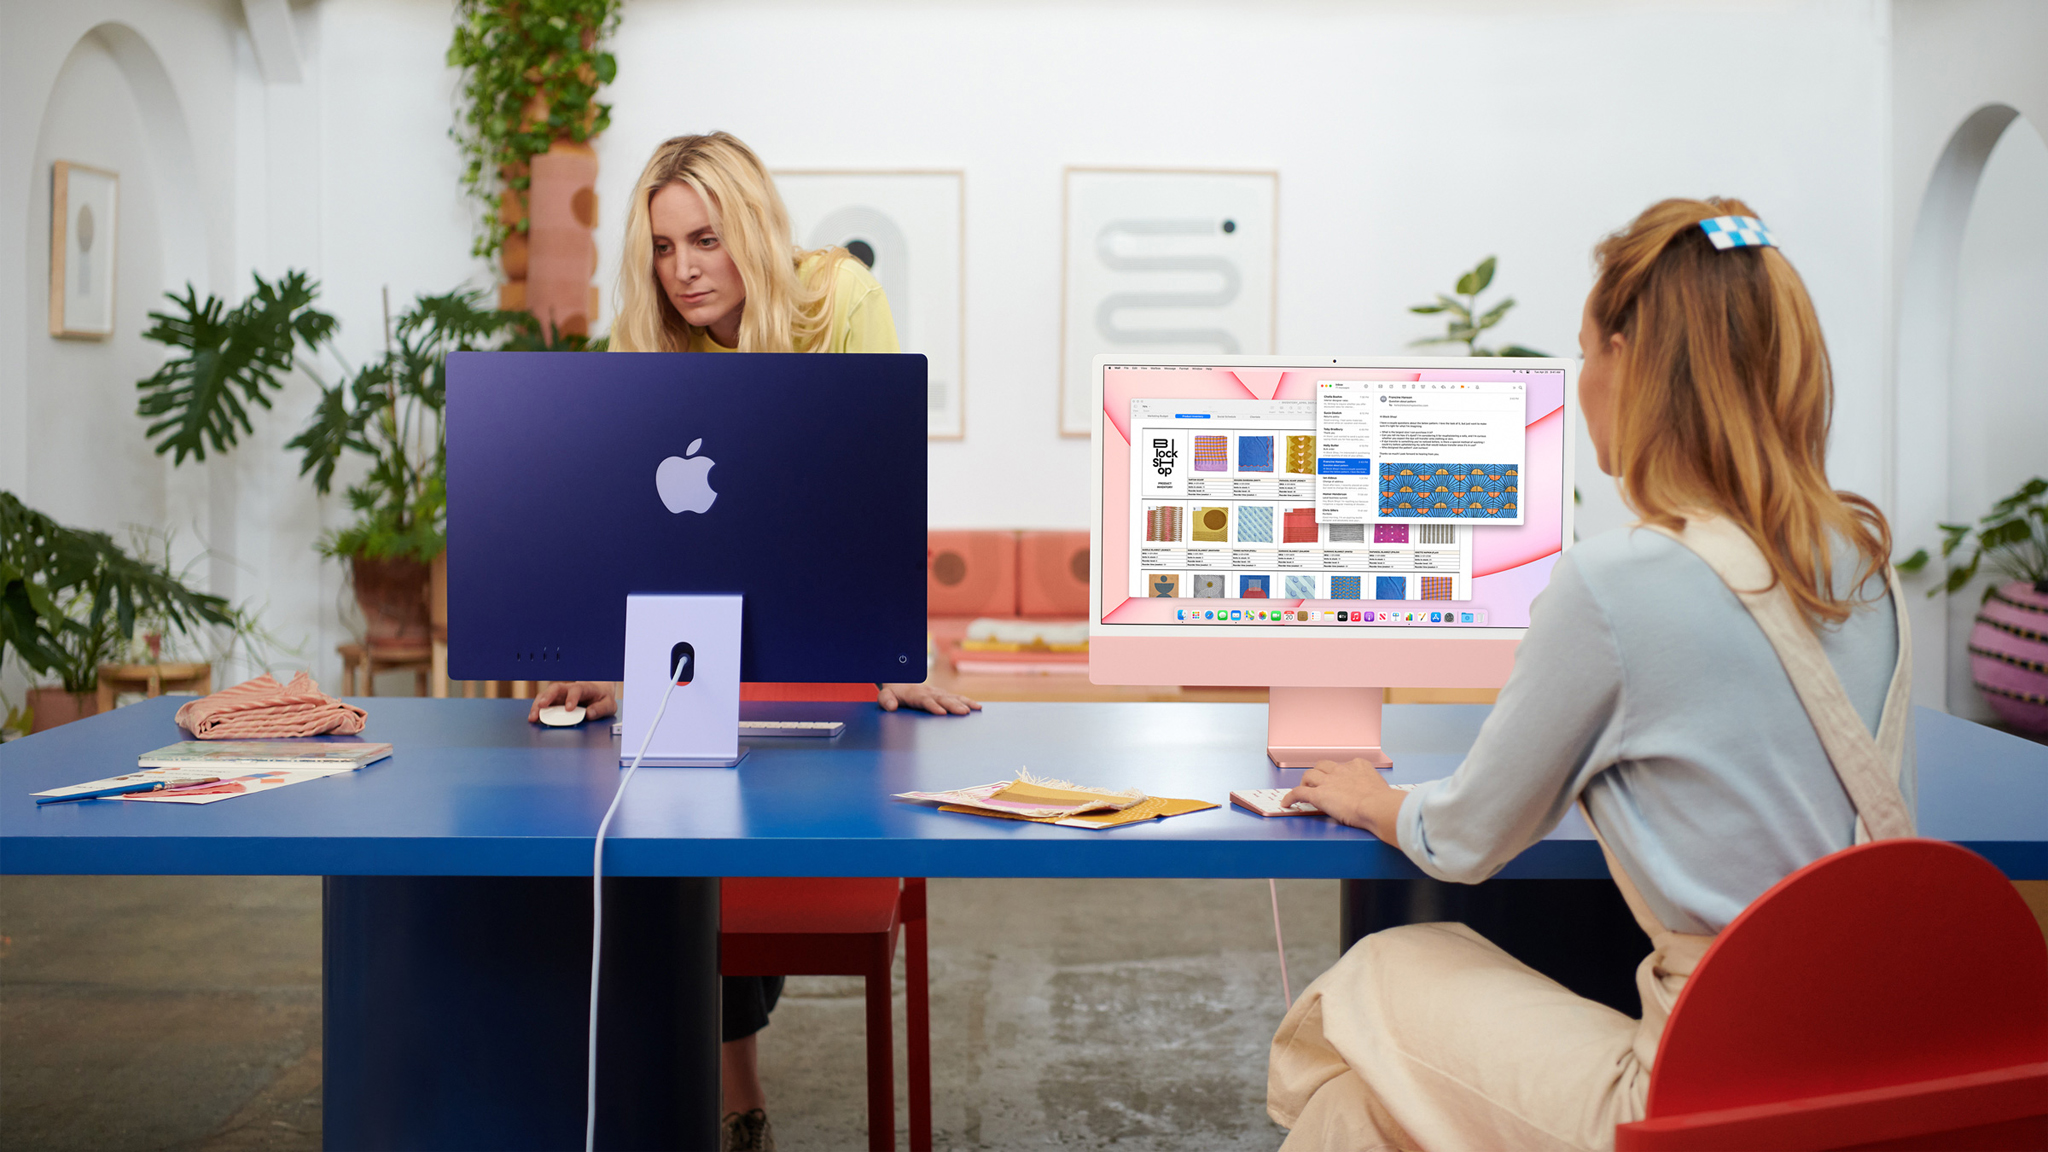 iMac 2021: Preis, Erscheinungsdatum, Design - jetzt mit M1 ...